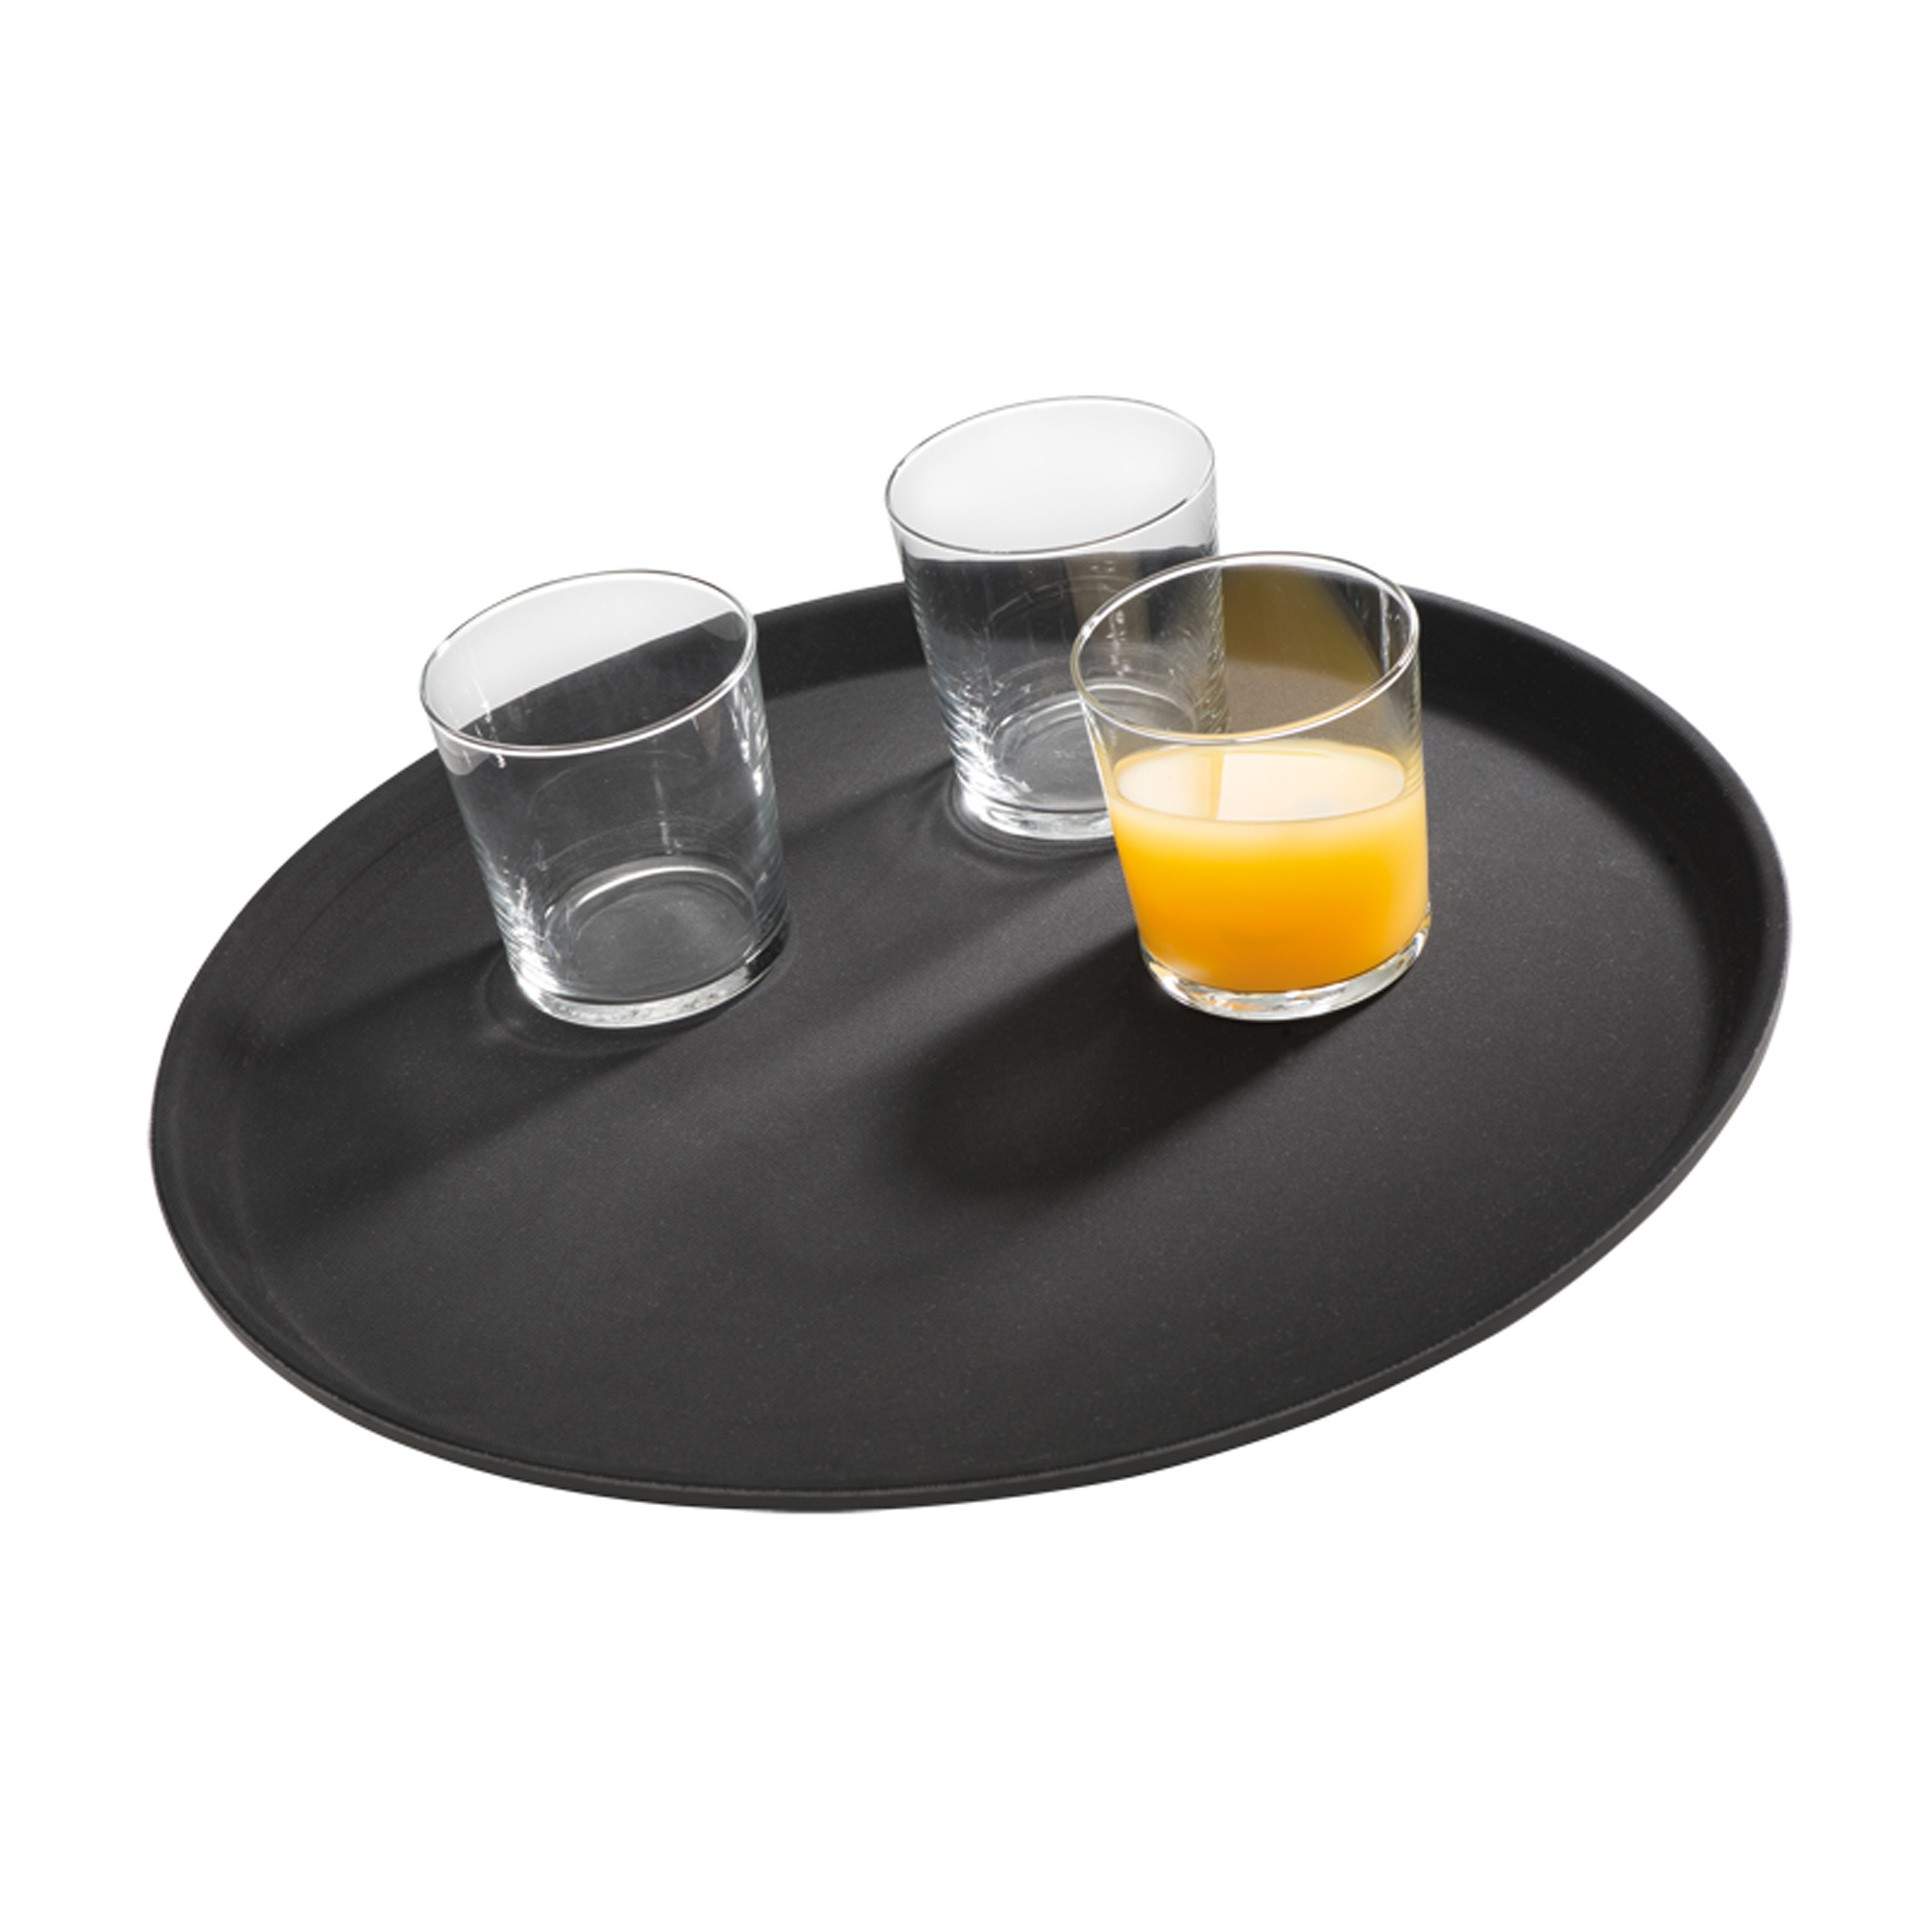 Tablett - rutschfeste Oberfläche - Serie Gastro - schwarz - rund - Abm. 2,0 cm - Ø 27,5 cm - glasfaserverstärkter Kunststoff - 547-B